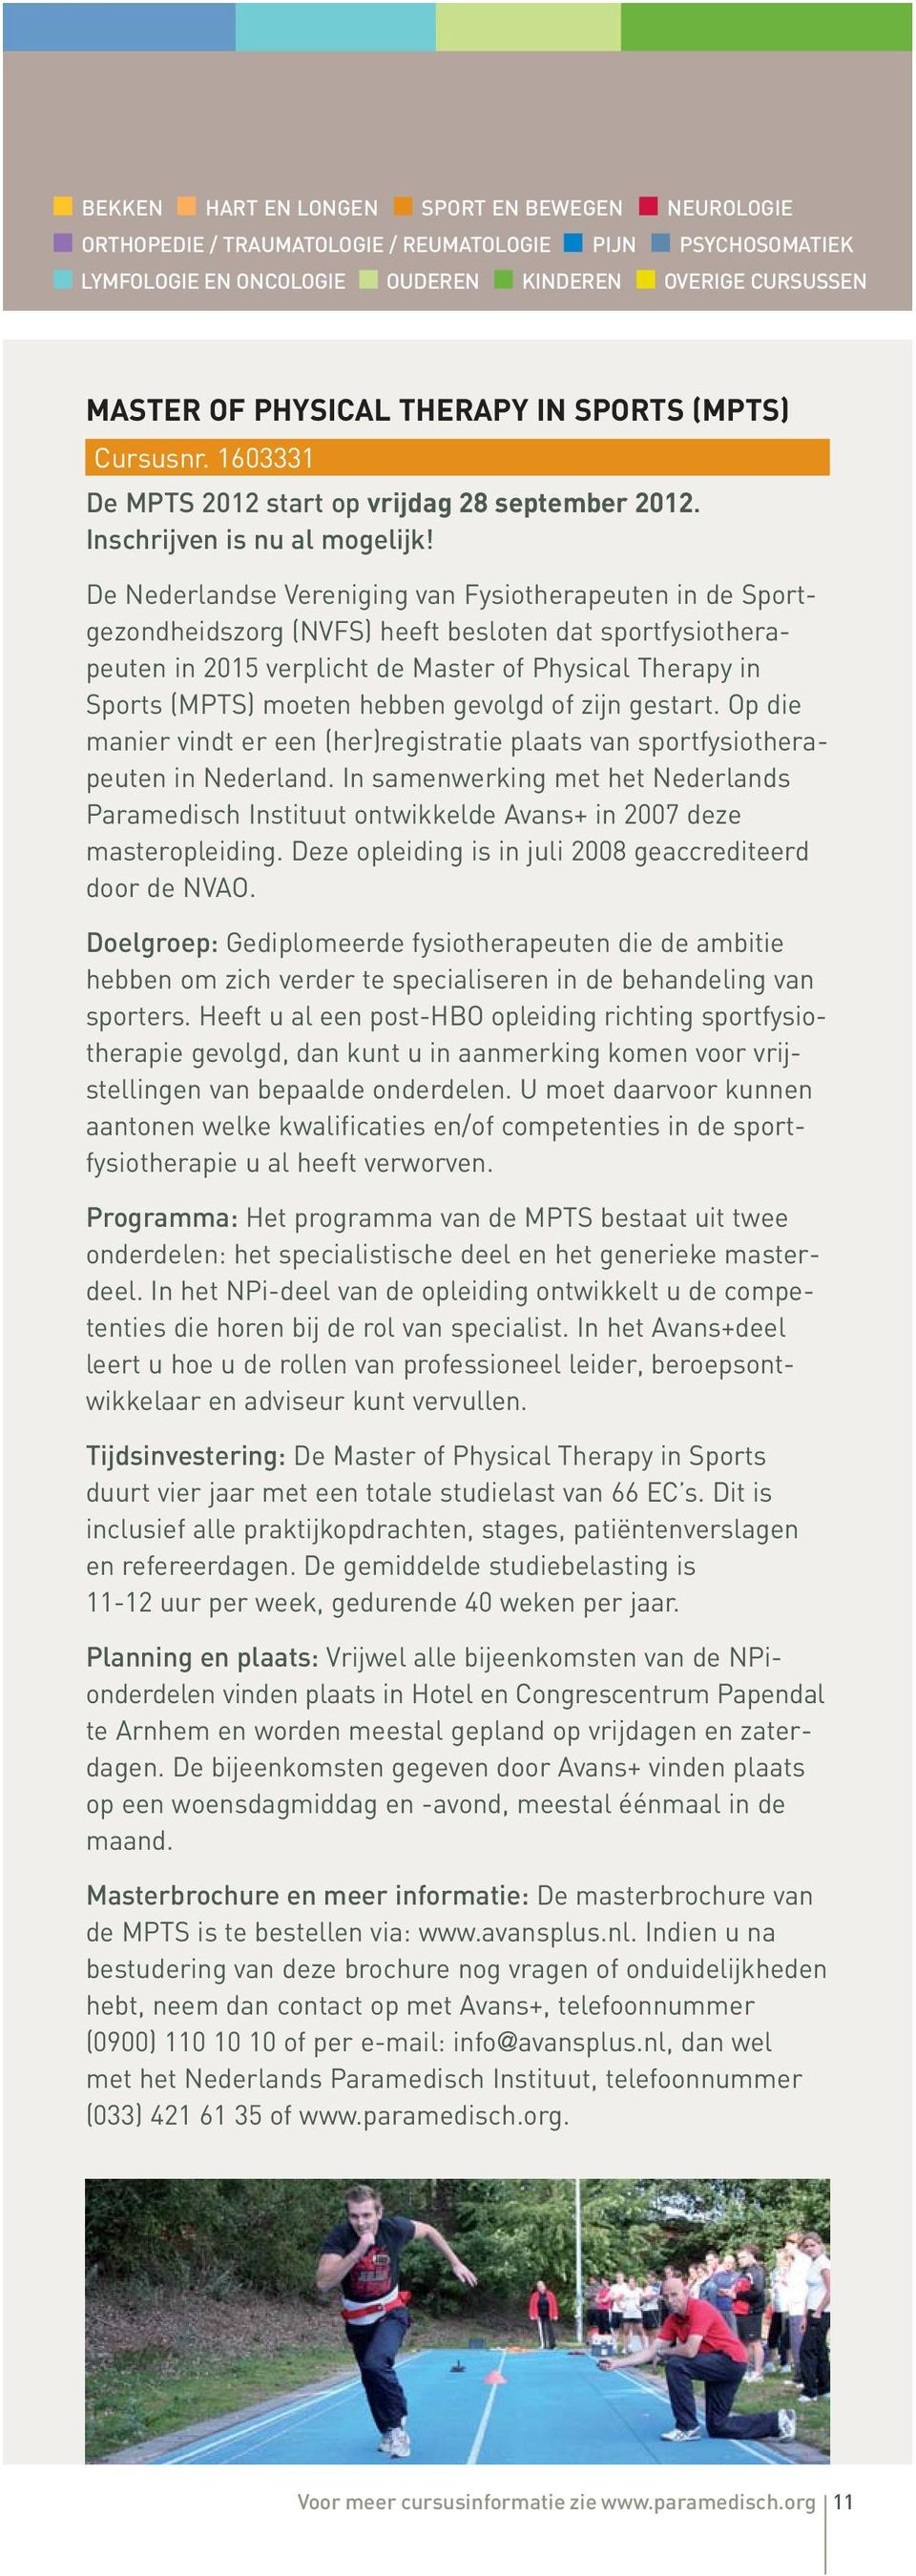 De Nederlandse Vereniging van Fysiotherapeuten in de Sport - gezondheidszorg (NVFS) heeft besloten dat sportfysiotherapeuten in 2015 verplicht de Master of Physical Therapy in Sports (MPTS) moeten